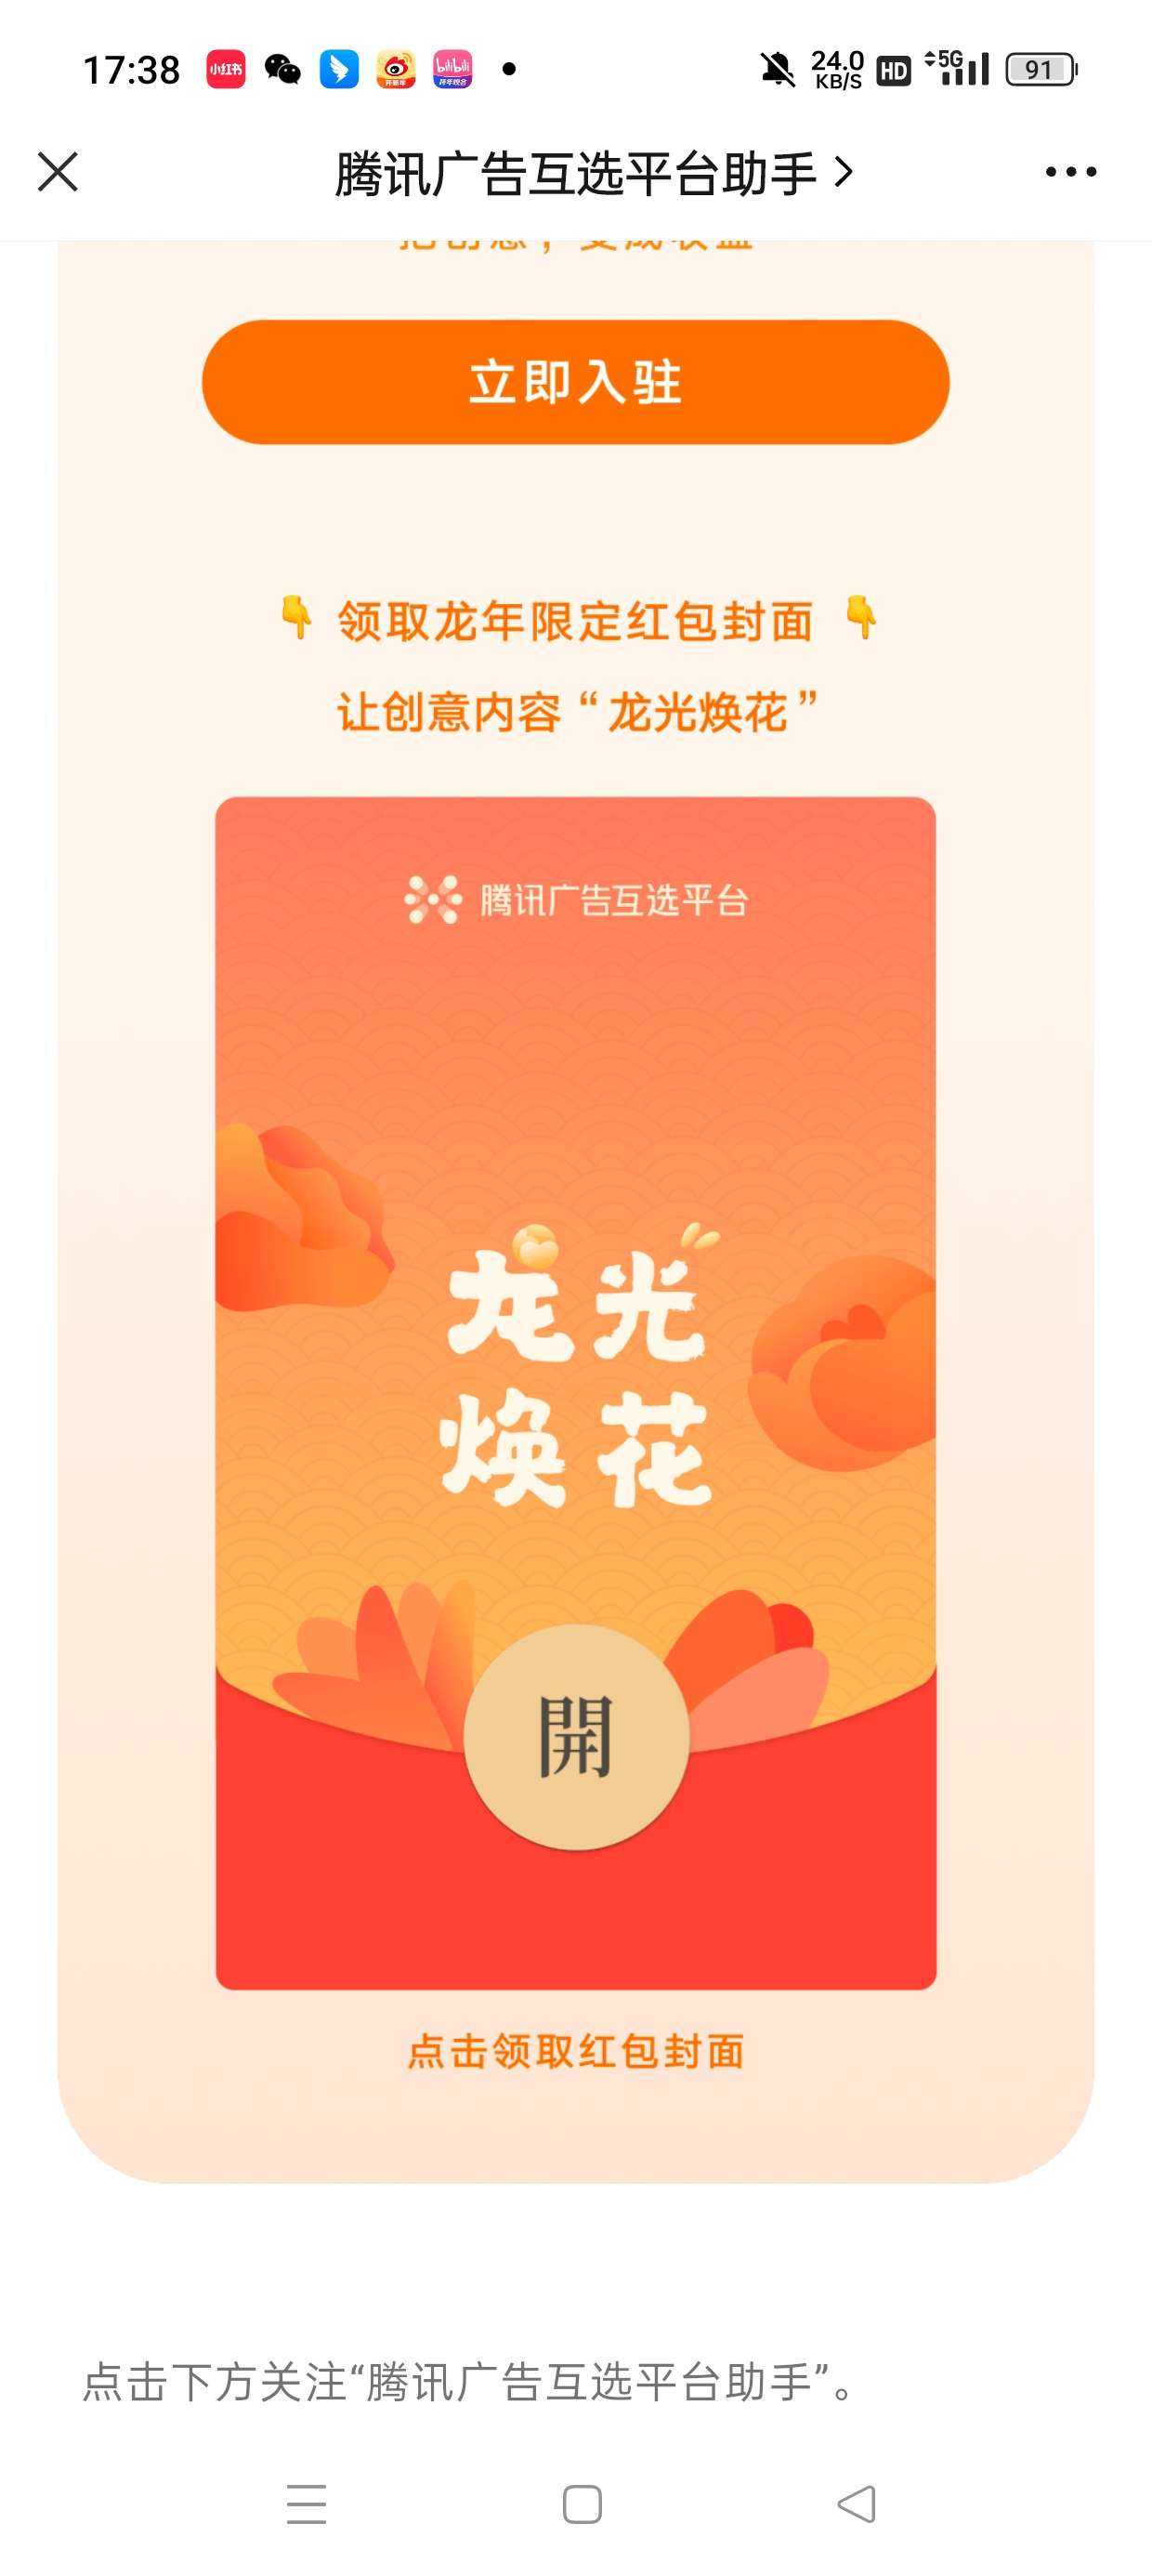 【虚拟物品】腾讯广告互选平台助手领封面_福利红包